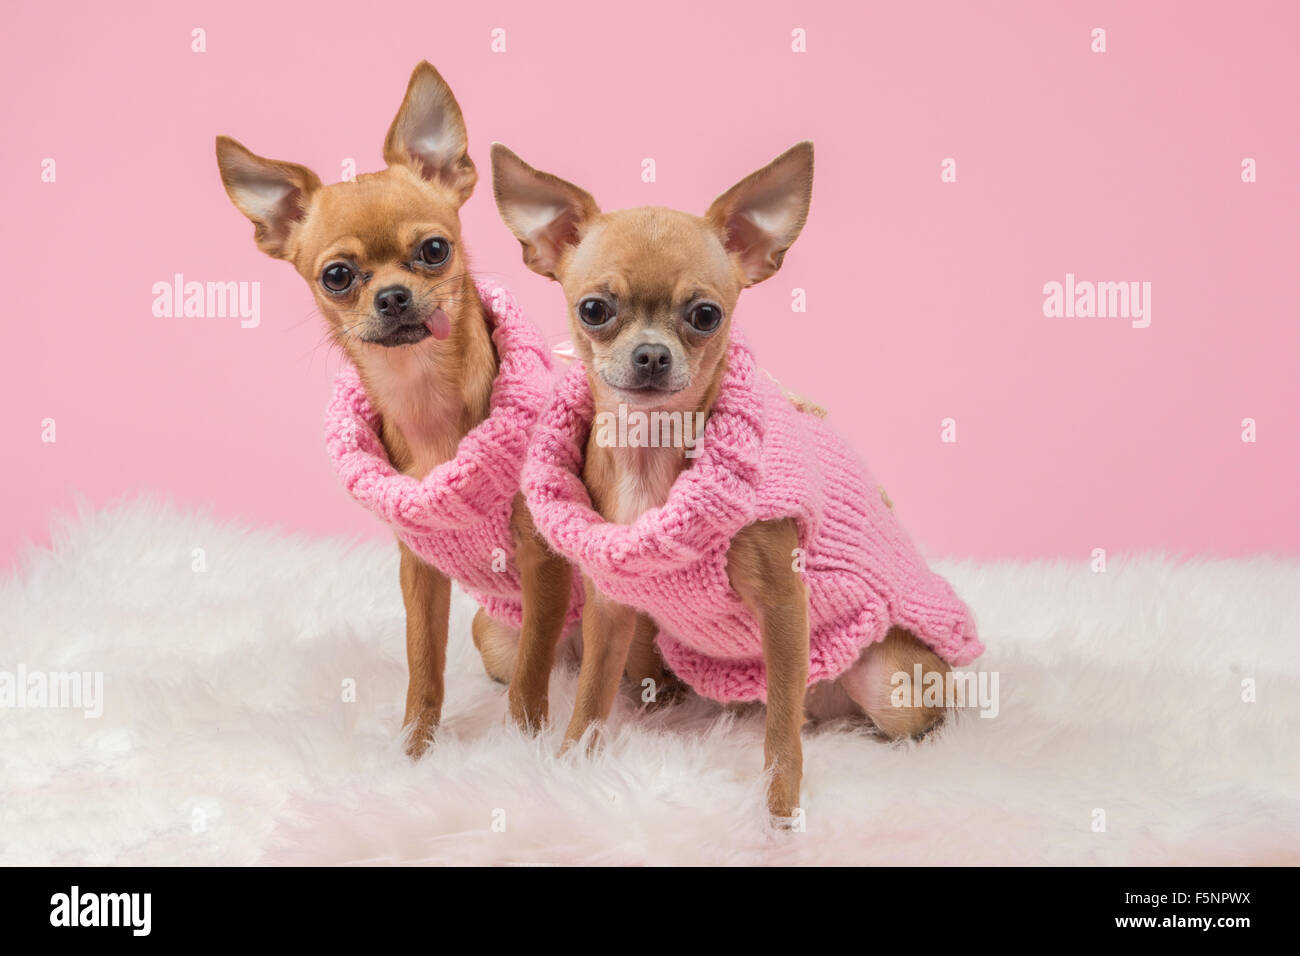 Cute chihuahua perros con suéteres tejidos rosa sobre un fondo de color rosa Foto de stock